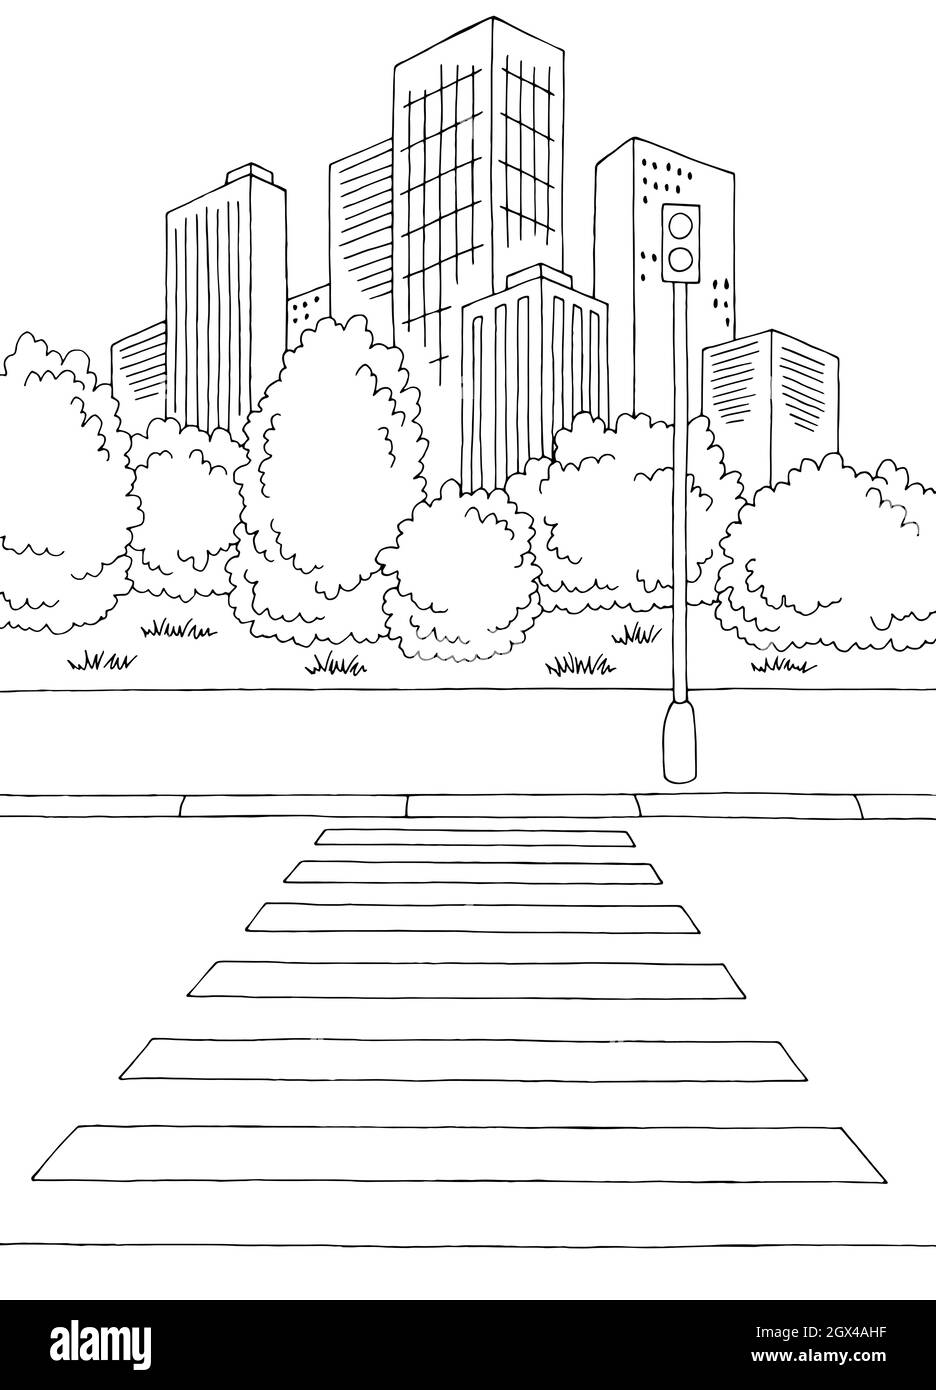 Crosswalk strada grafica bianco nero città verticale paesaggio disegno vettore Illustrazione Vettoriale